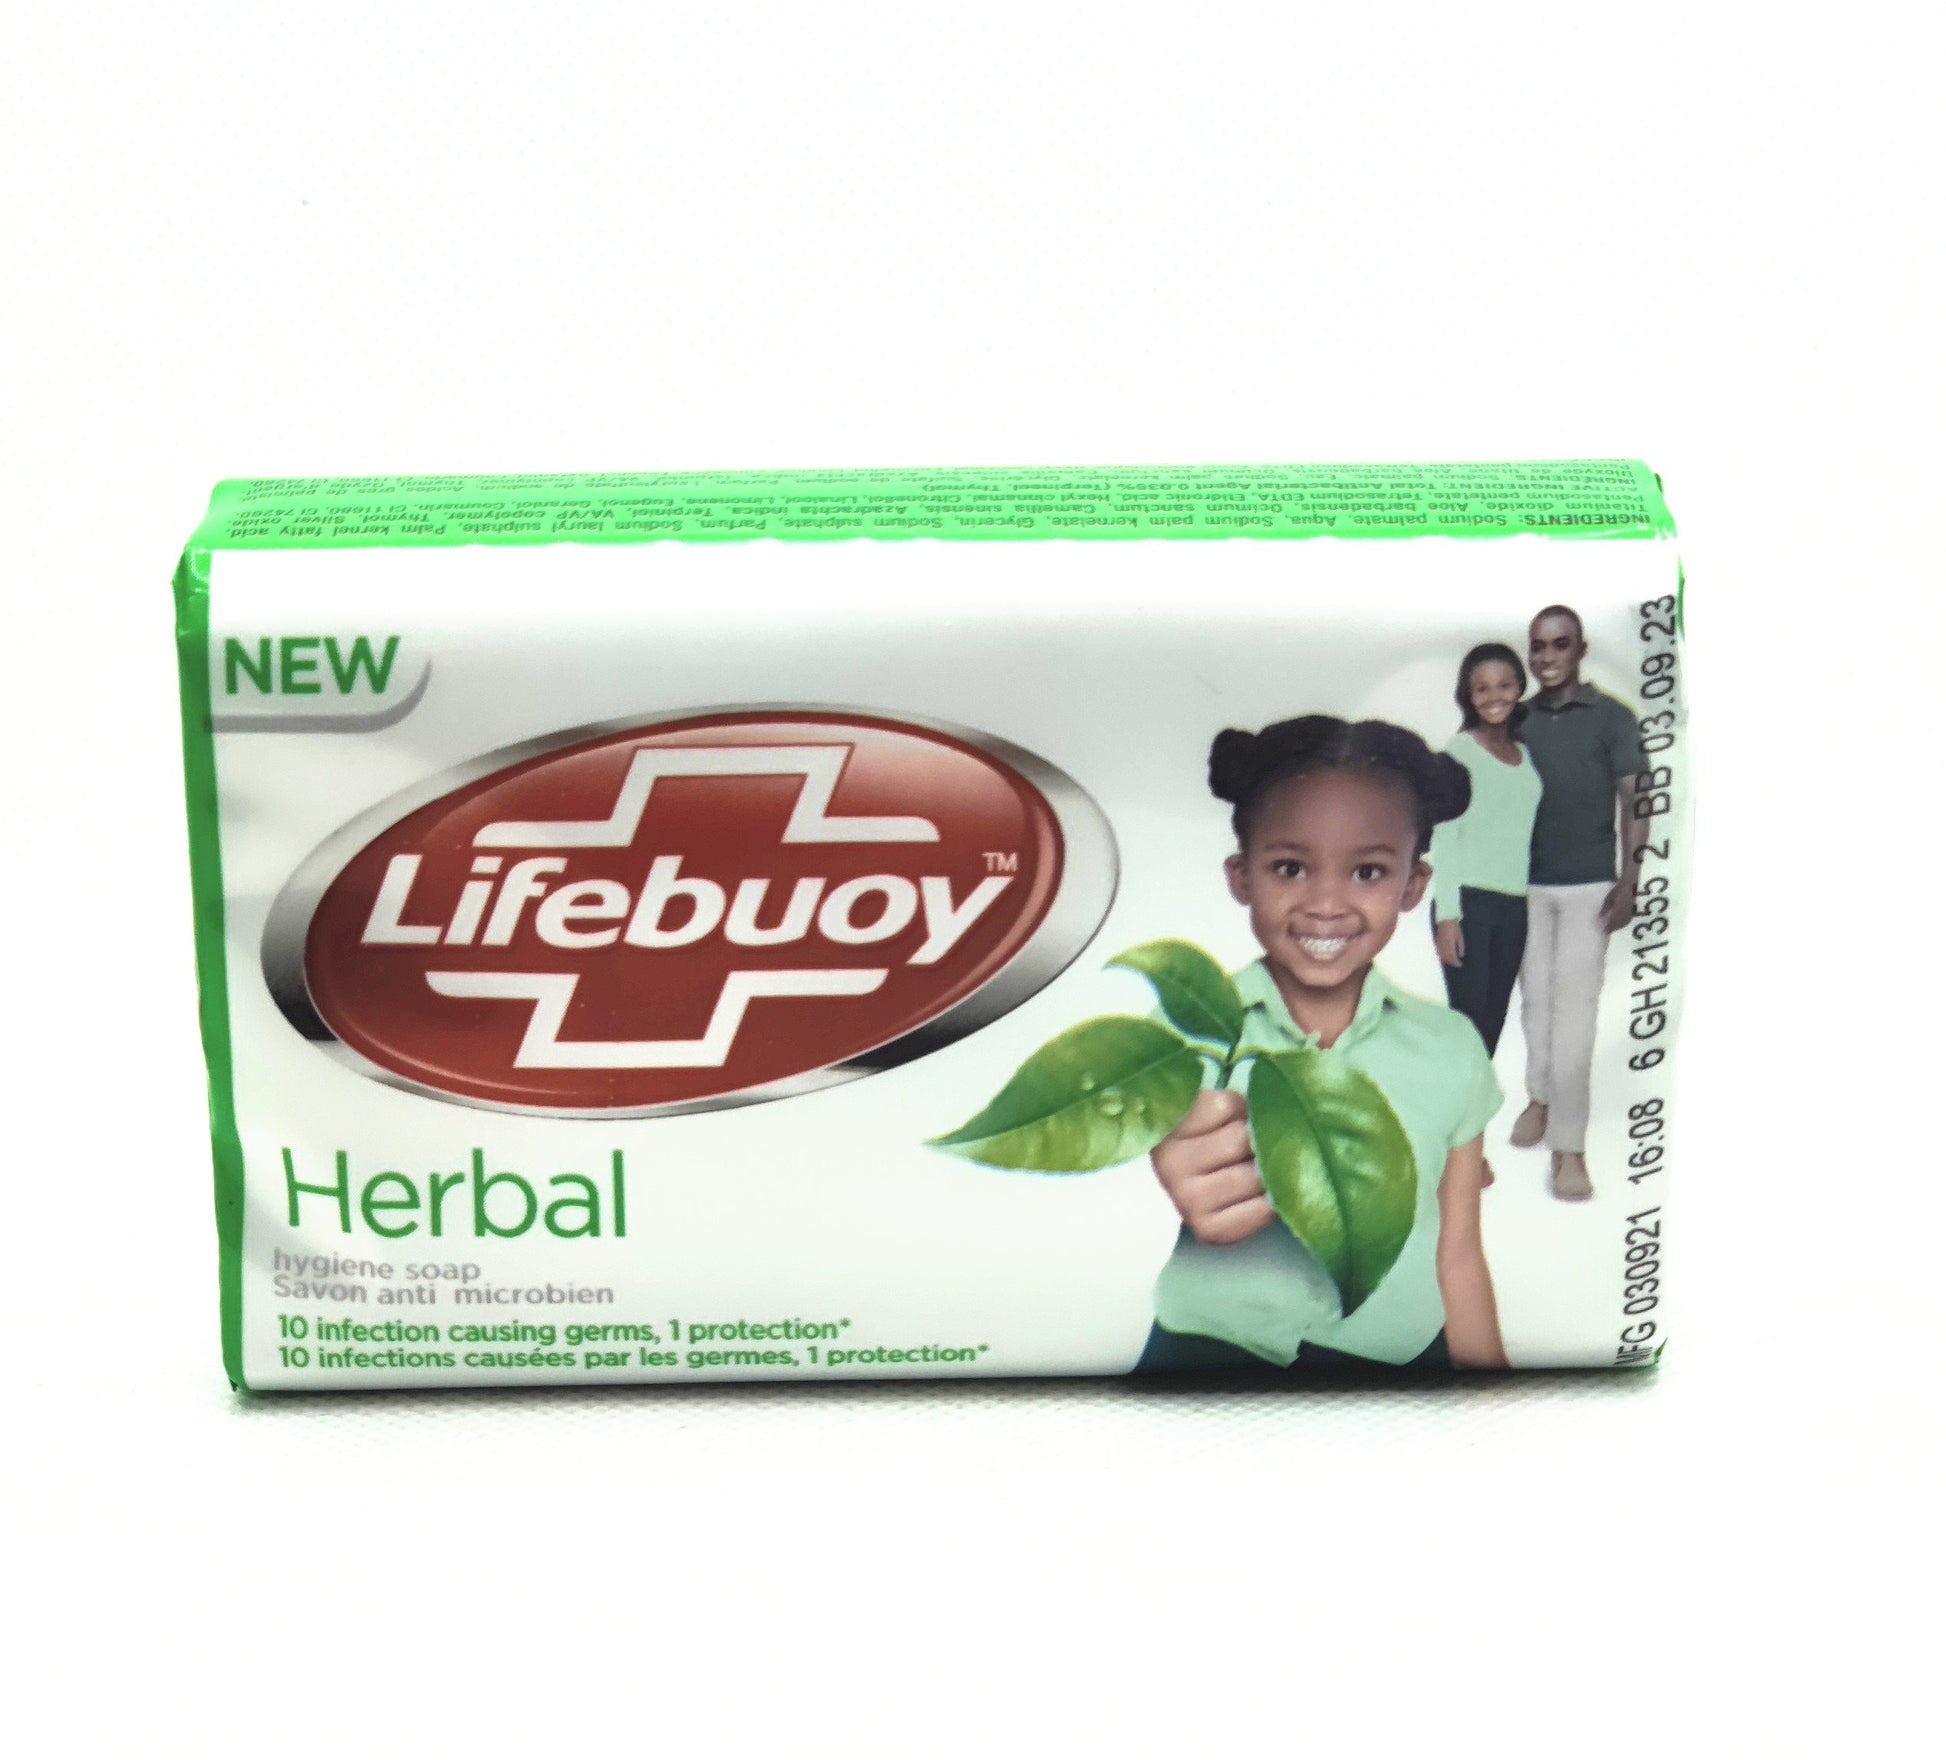 175 gram bar of lifebuoy herbal soap